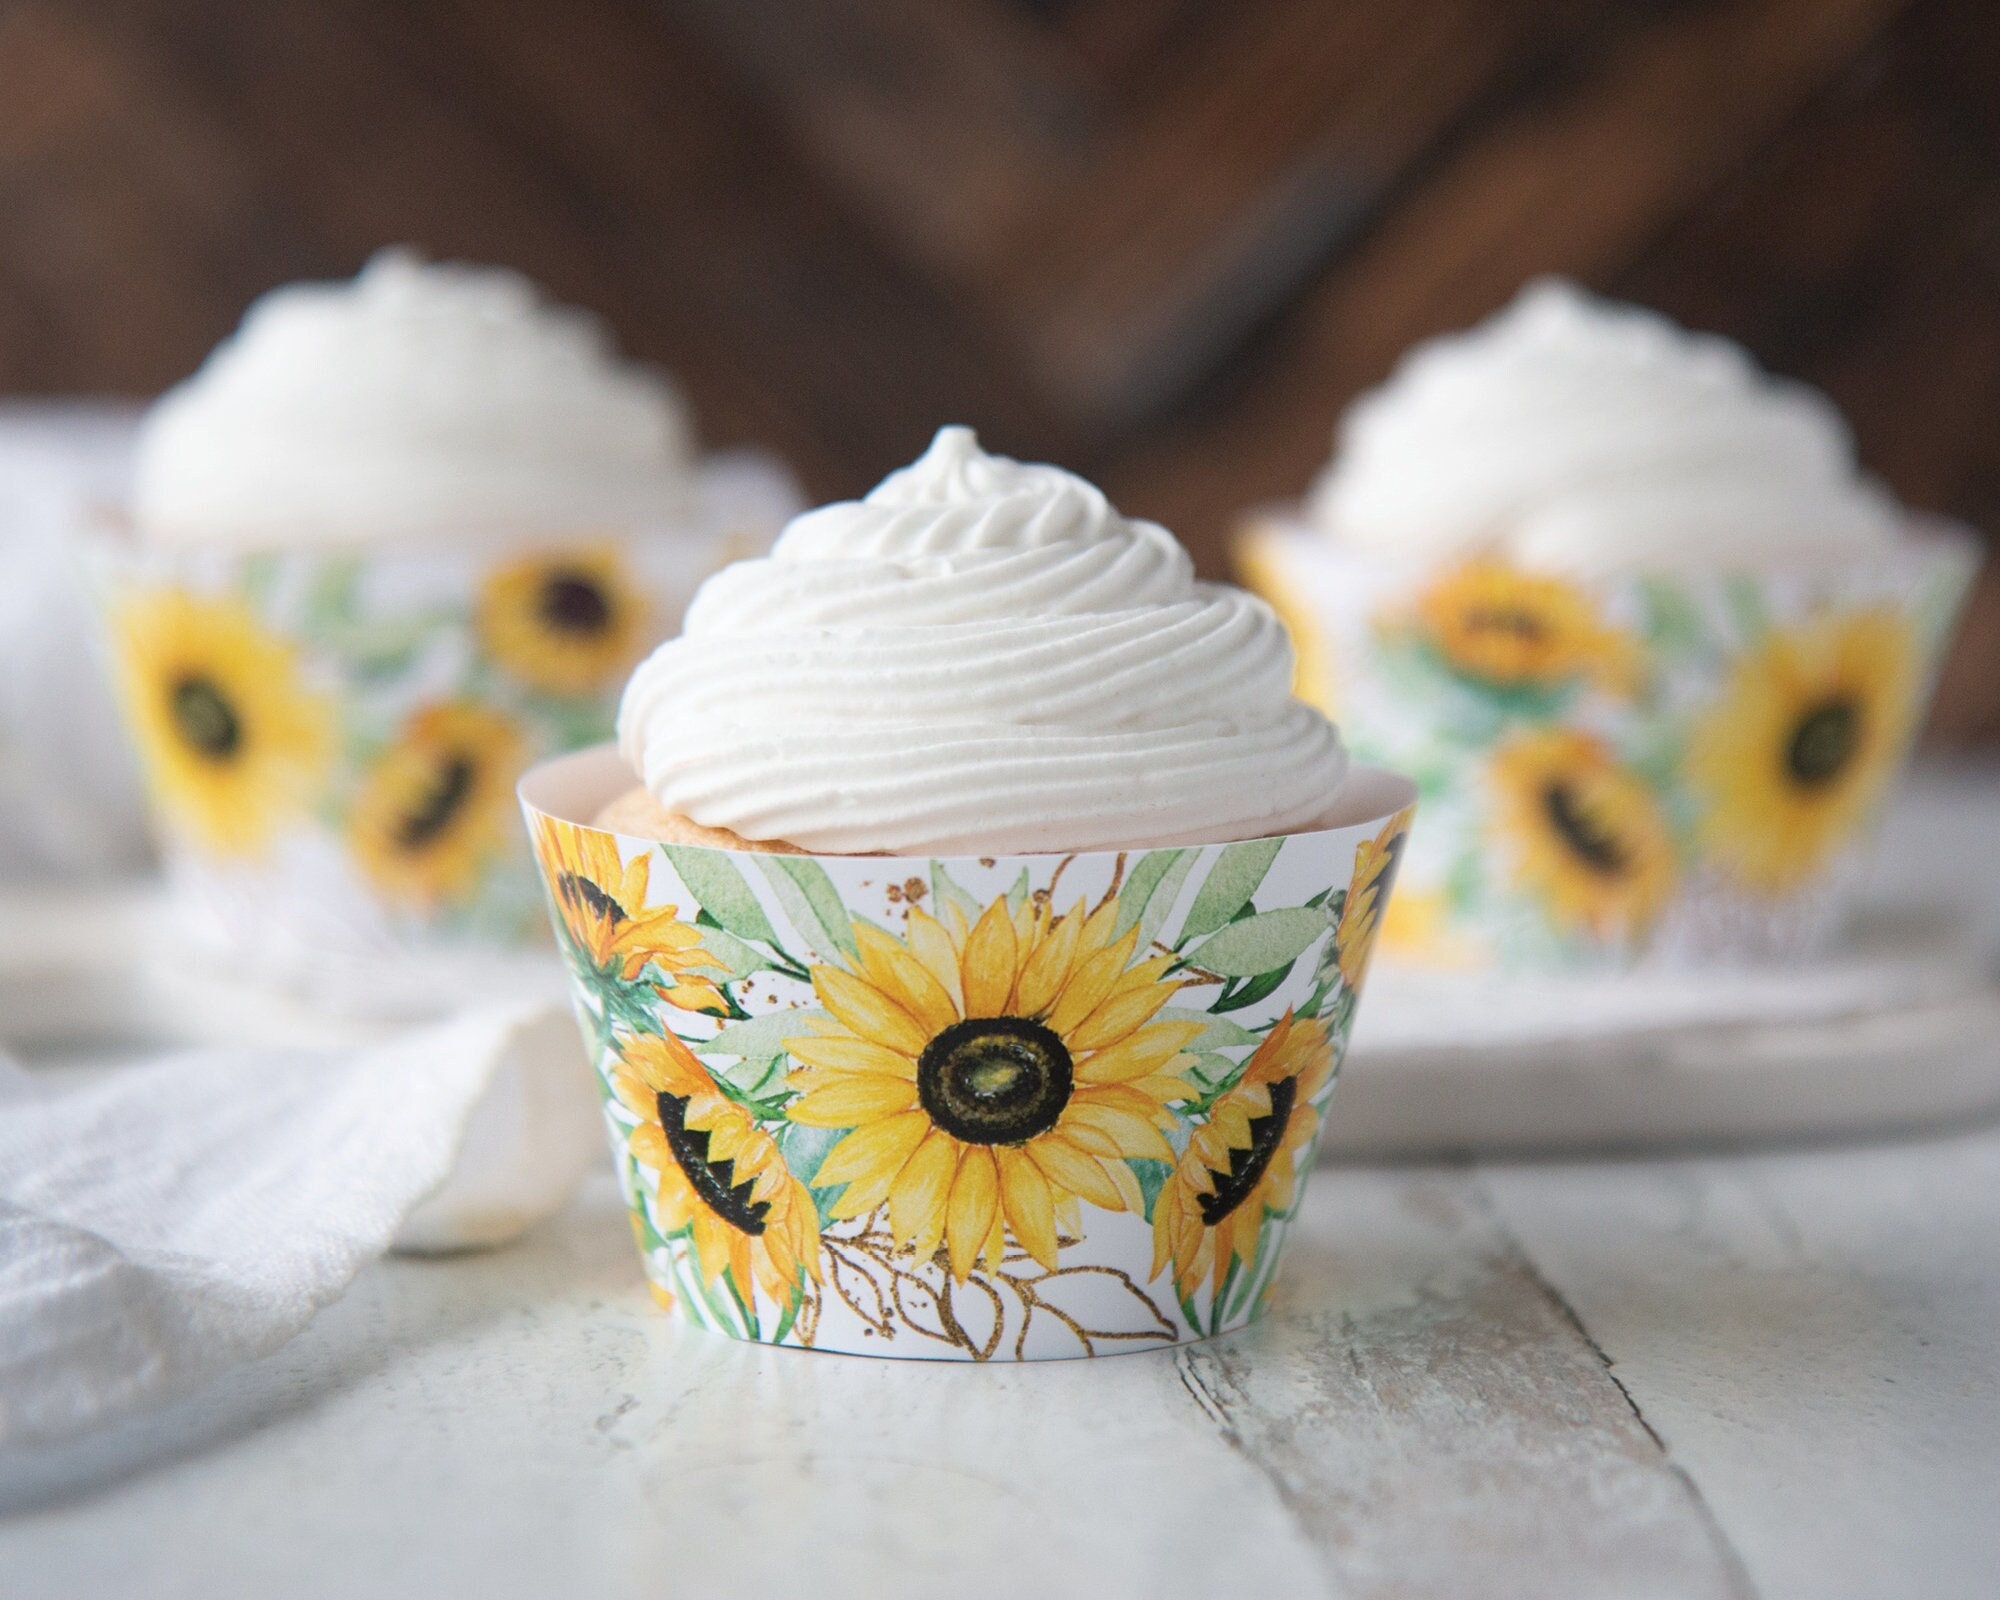 SET. 100 Caissettes à Mini Cupcakes Muffins Violette